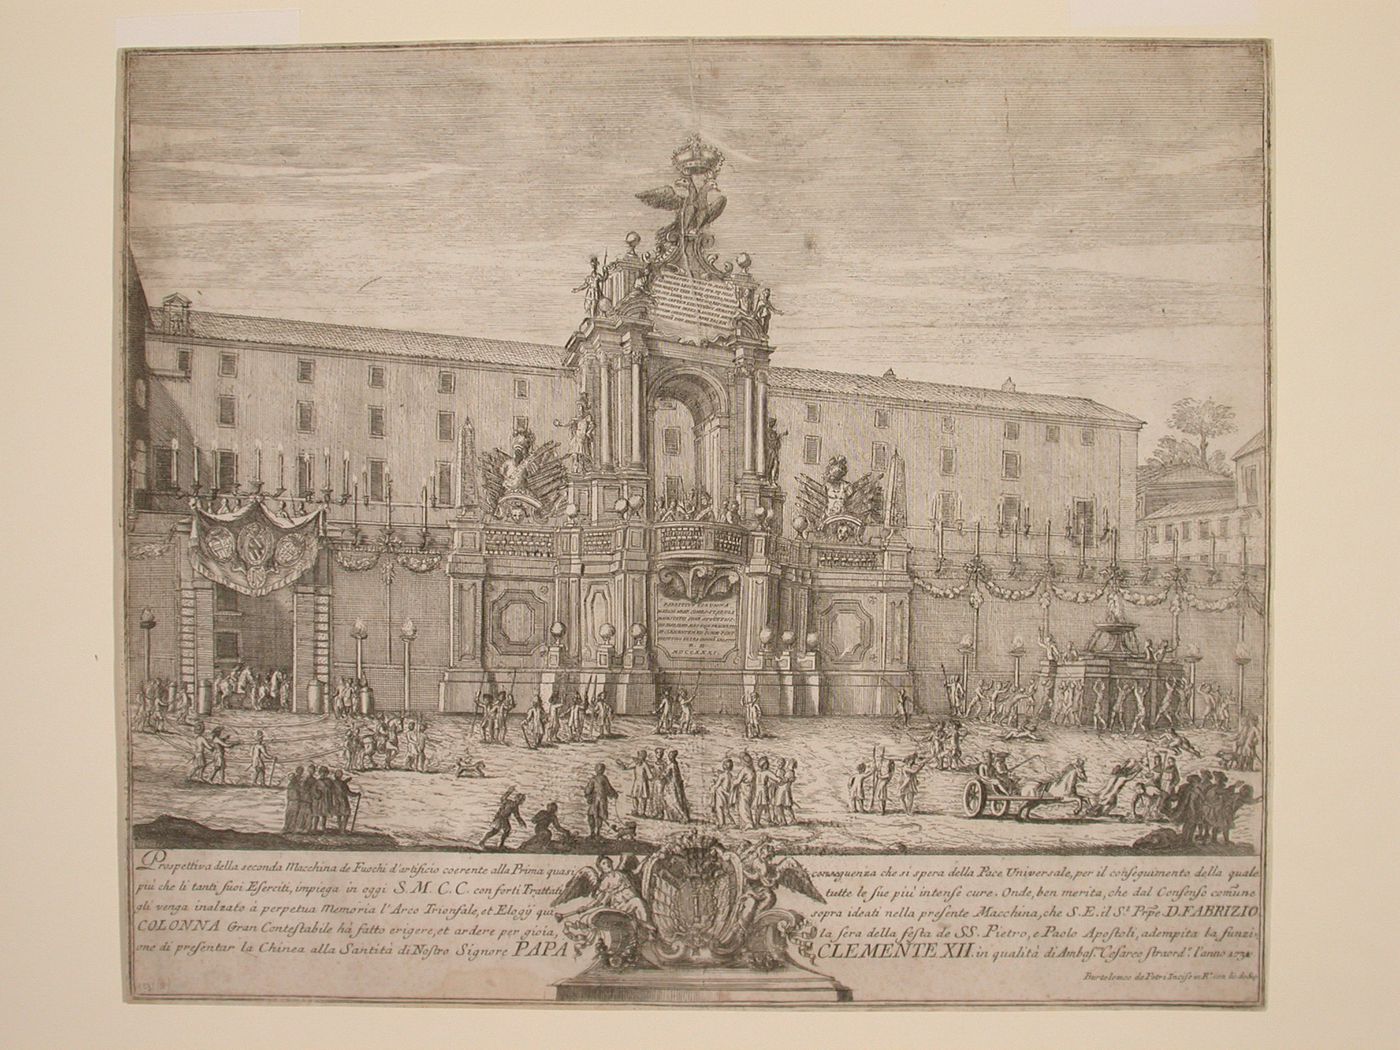 Etching of Michetti's design for the "seconda macchina" of 1731